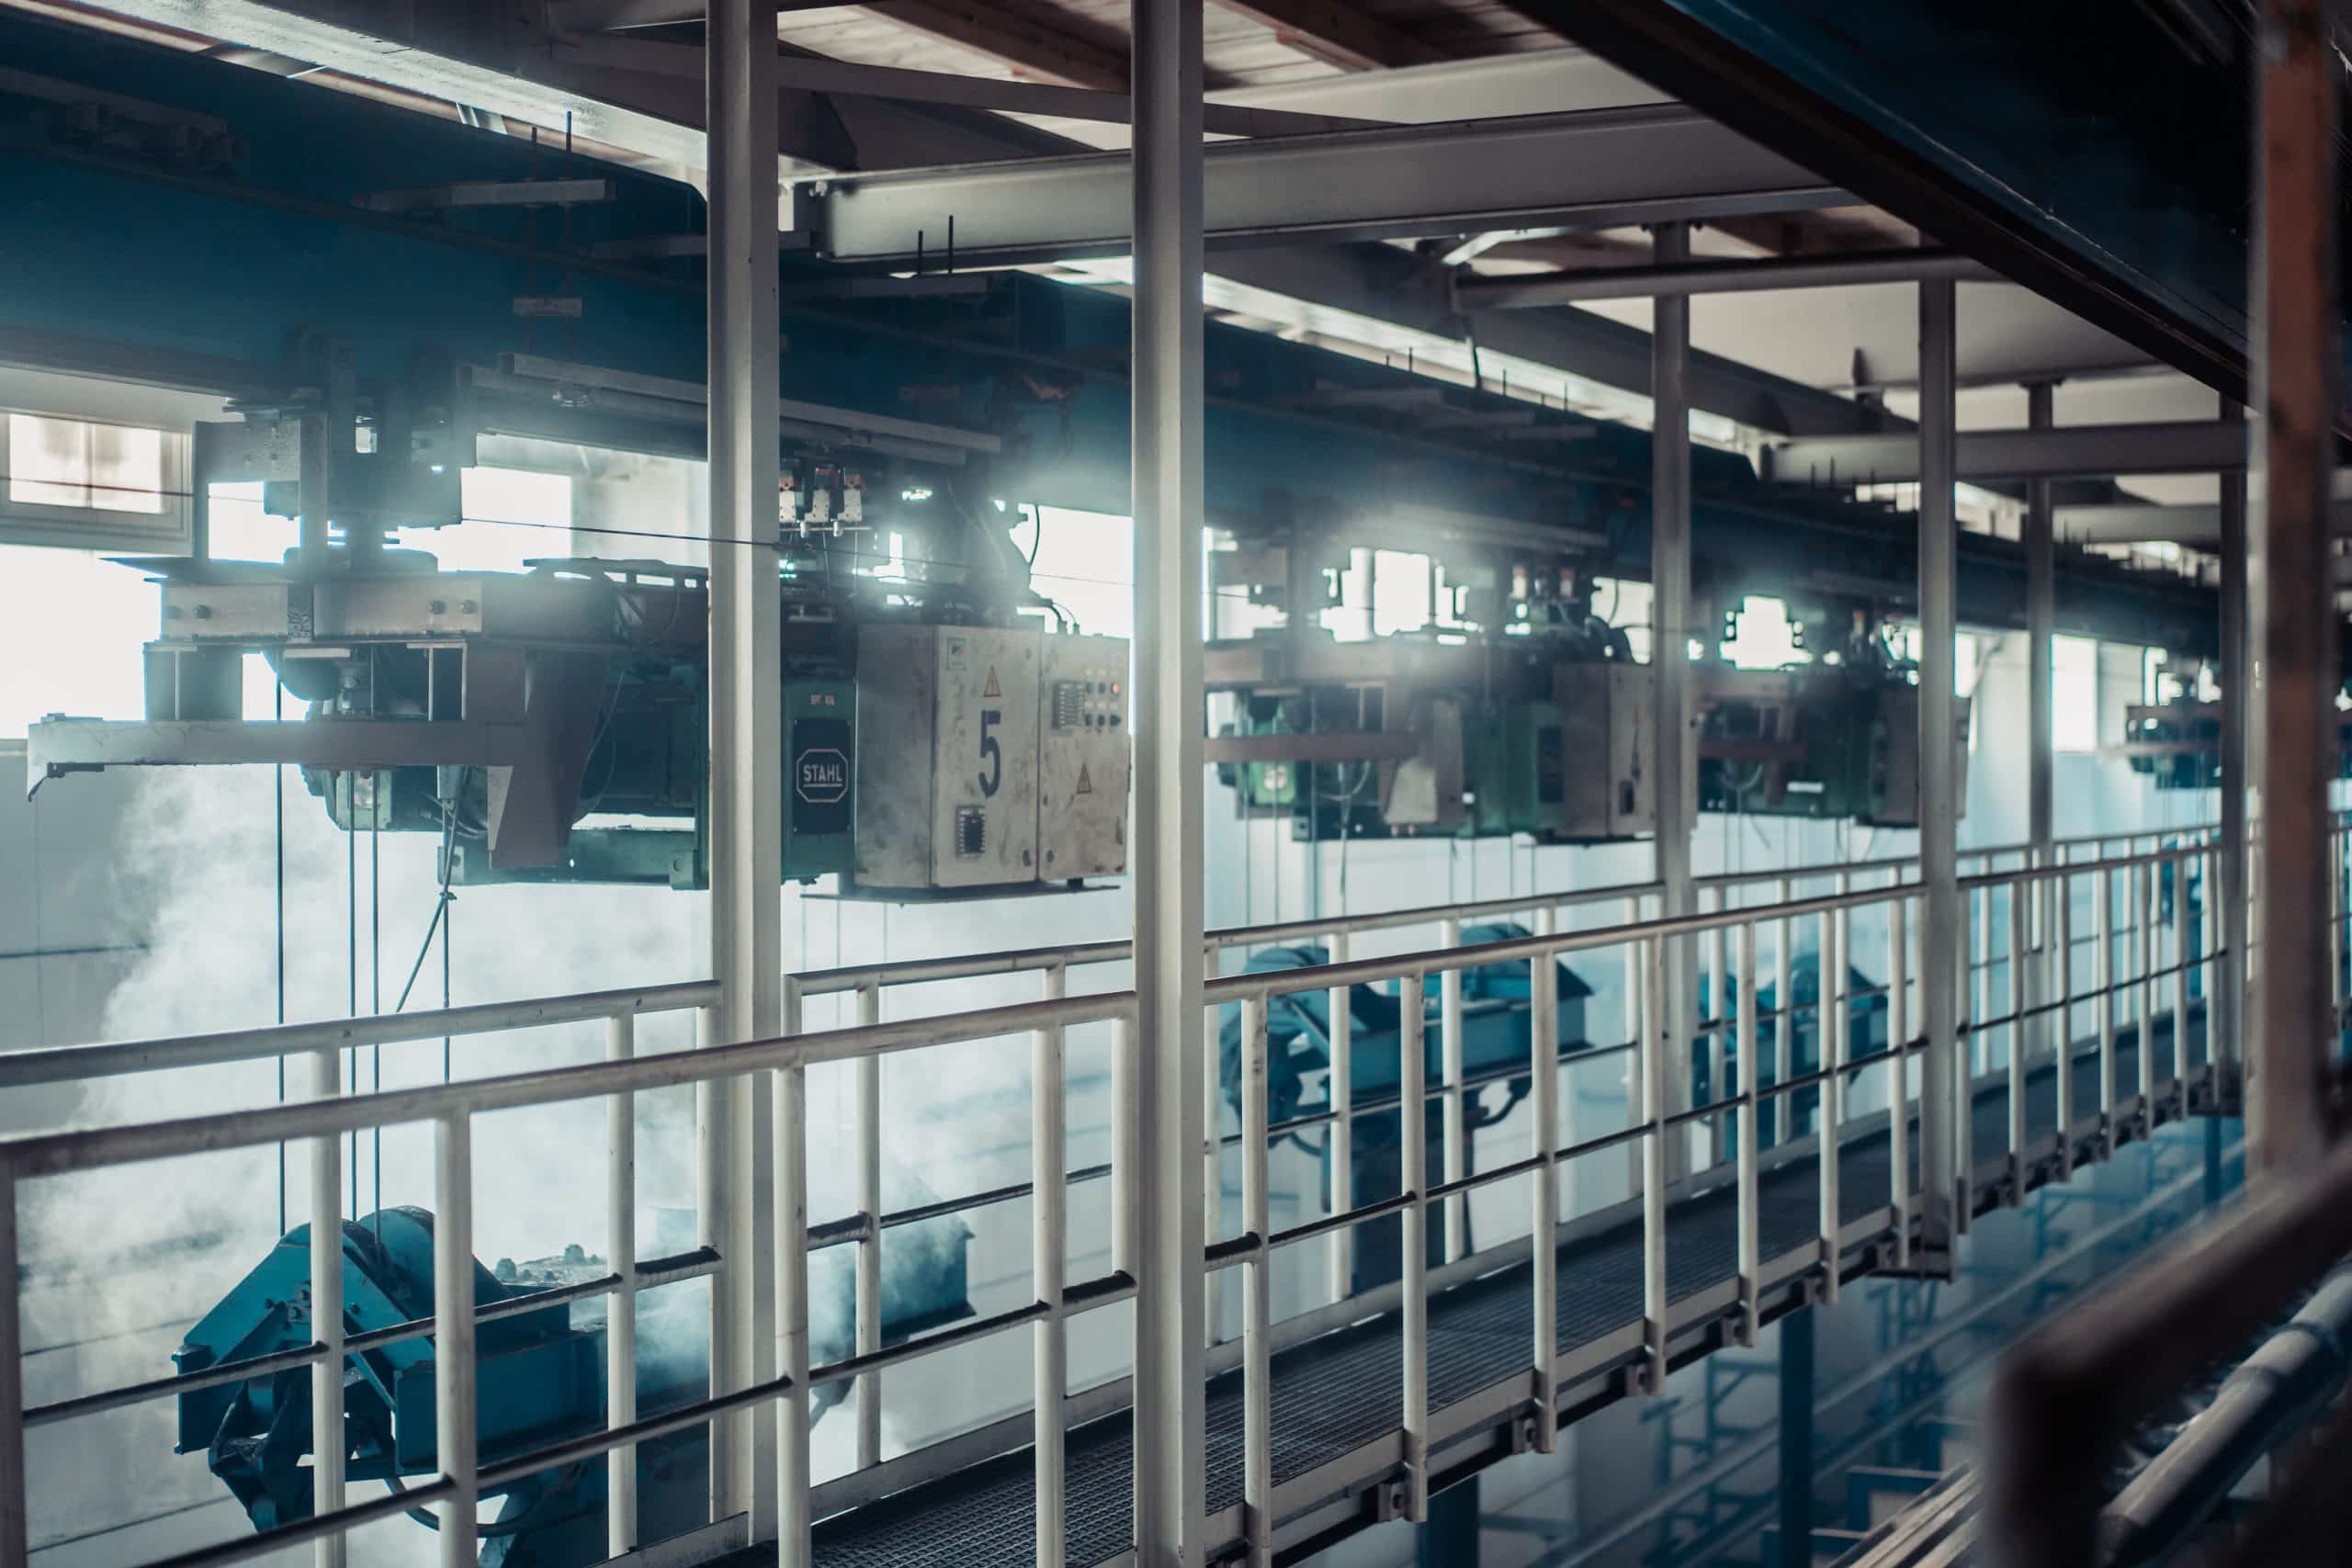 Man sieht einen hoch gelegenen Laufsteg aus Stahl in einer Industriehalle sowie mehrere unter der Decke montierte Kranbahnen. Dies sind gefertigte Lastaufnahmemittel/Lasthebemittel.